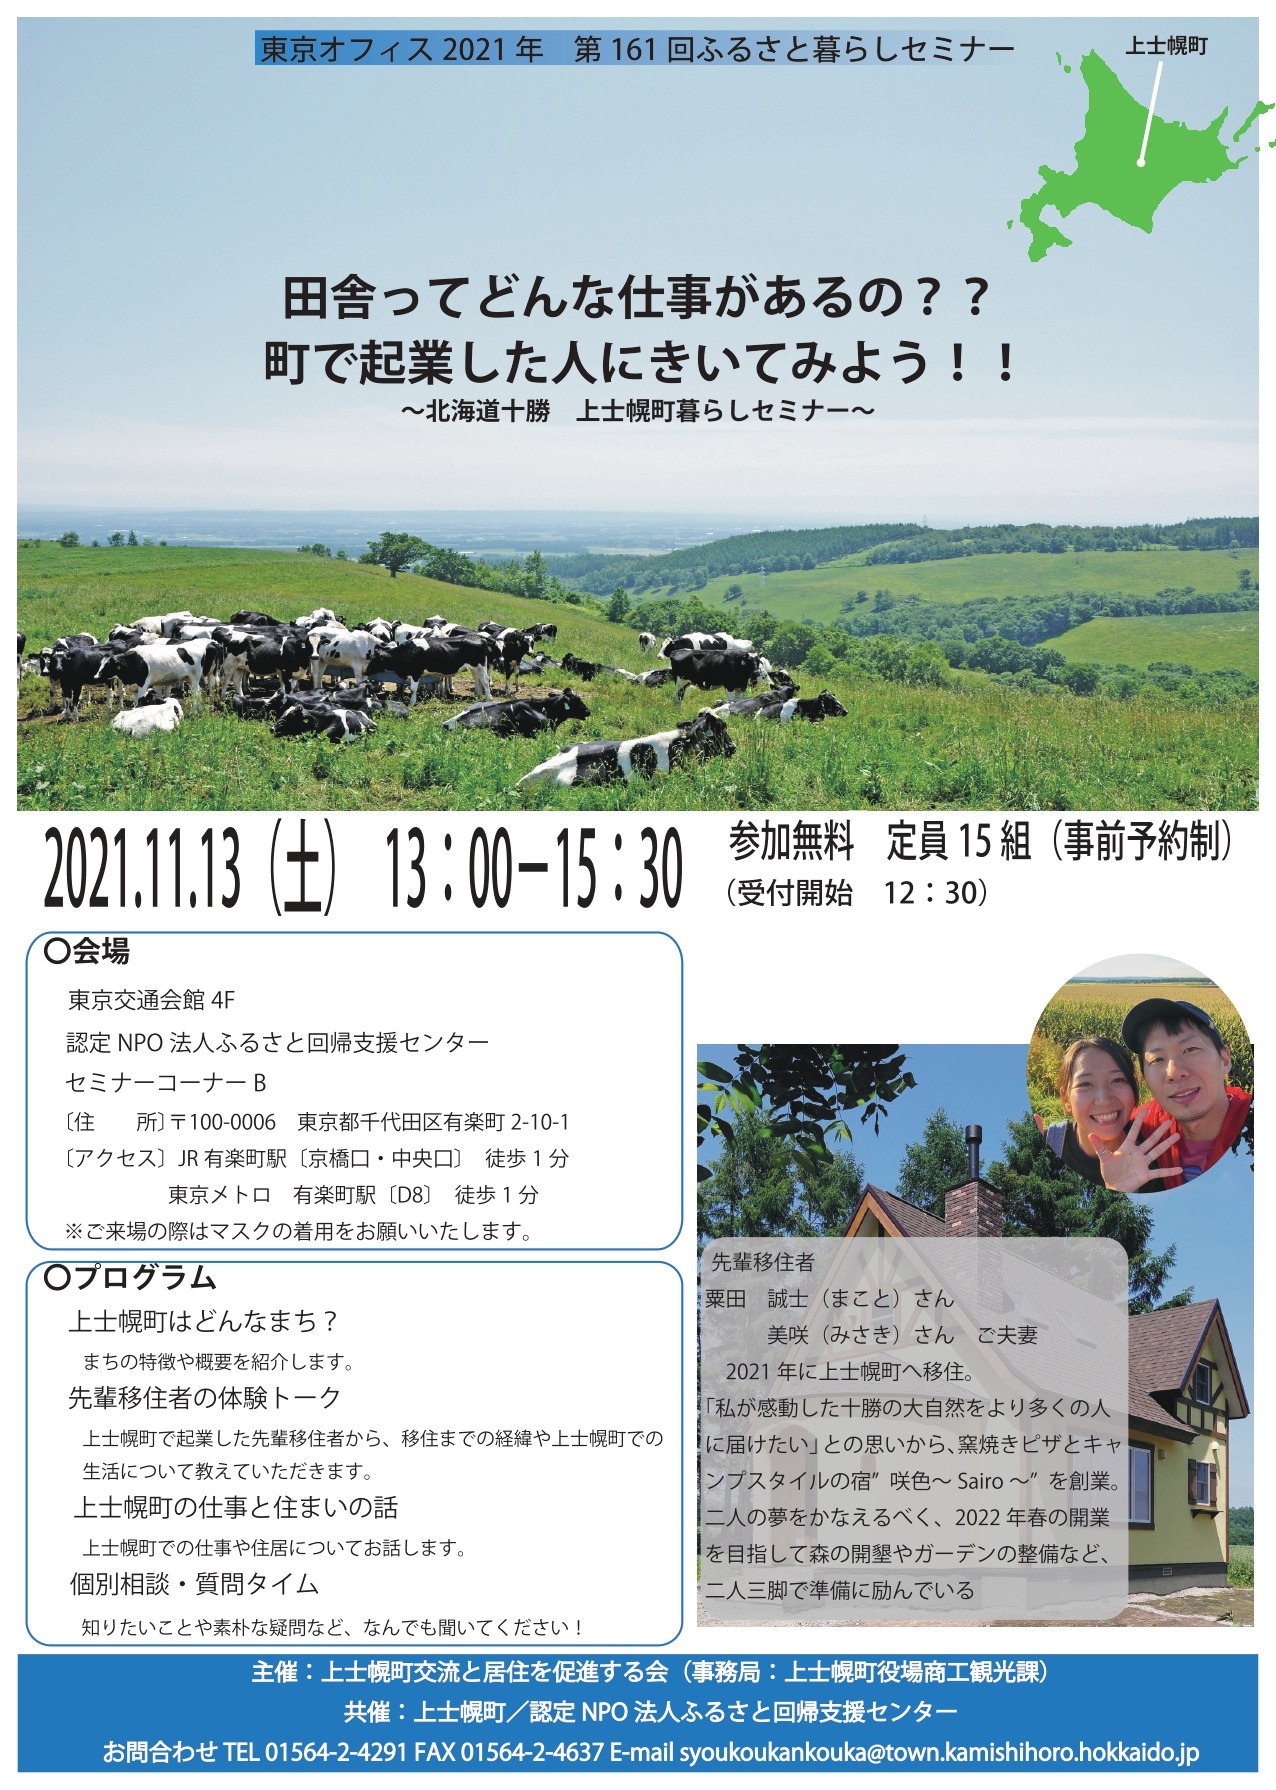 【移住相談会】東京・有楽町で暮らしセミナーを開催します